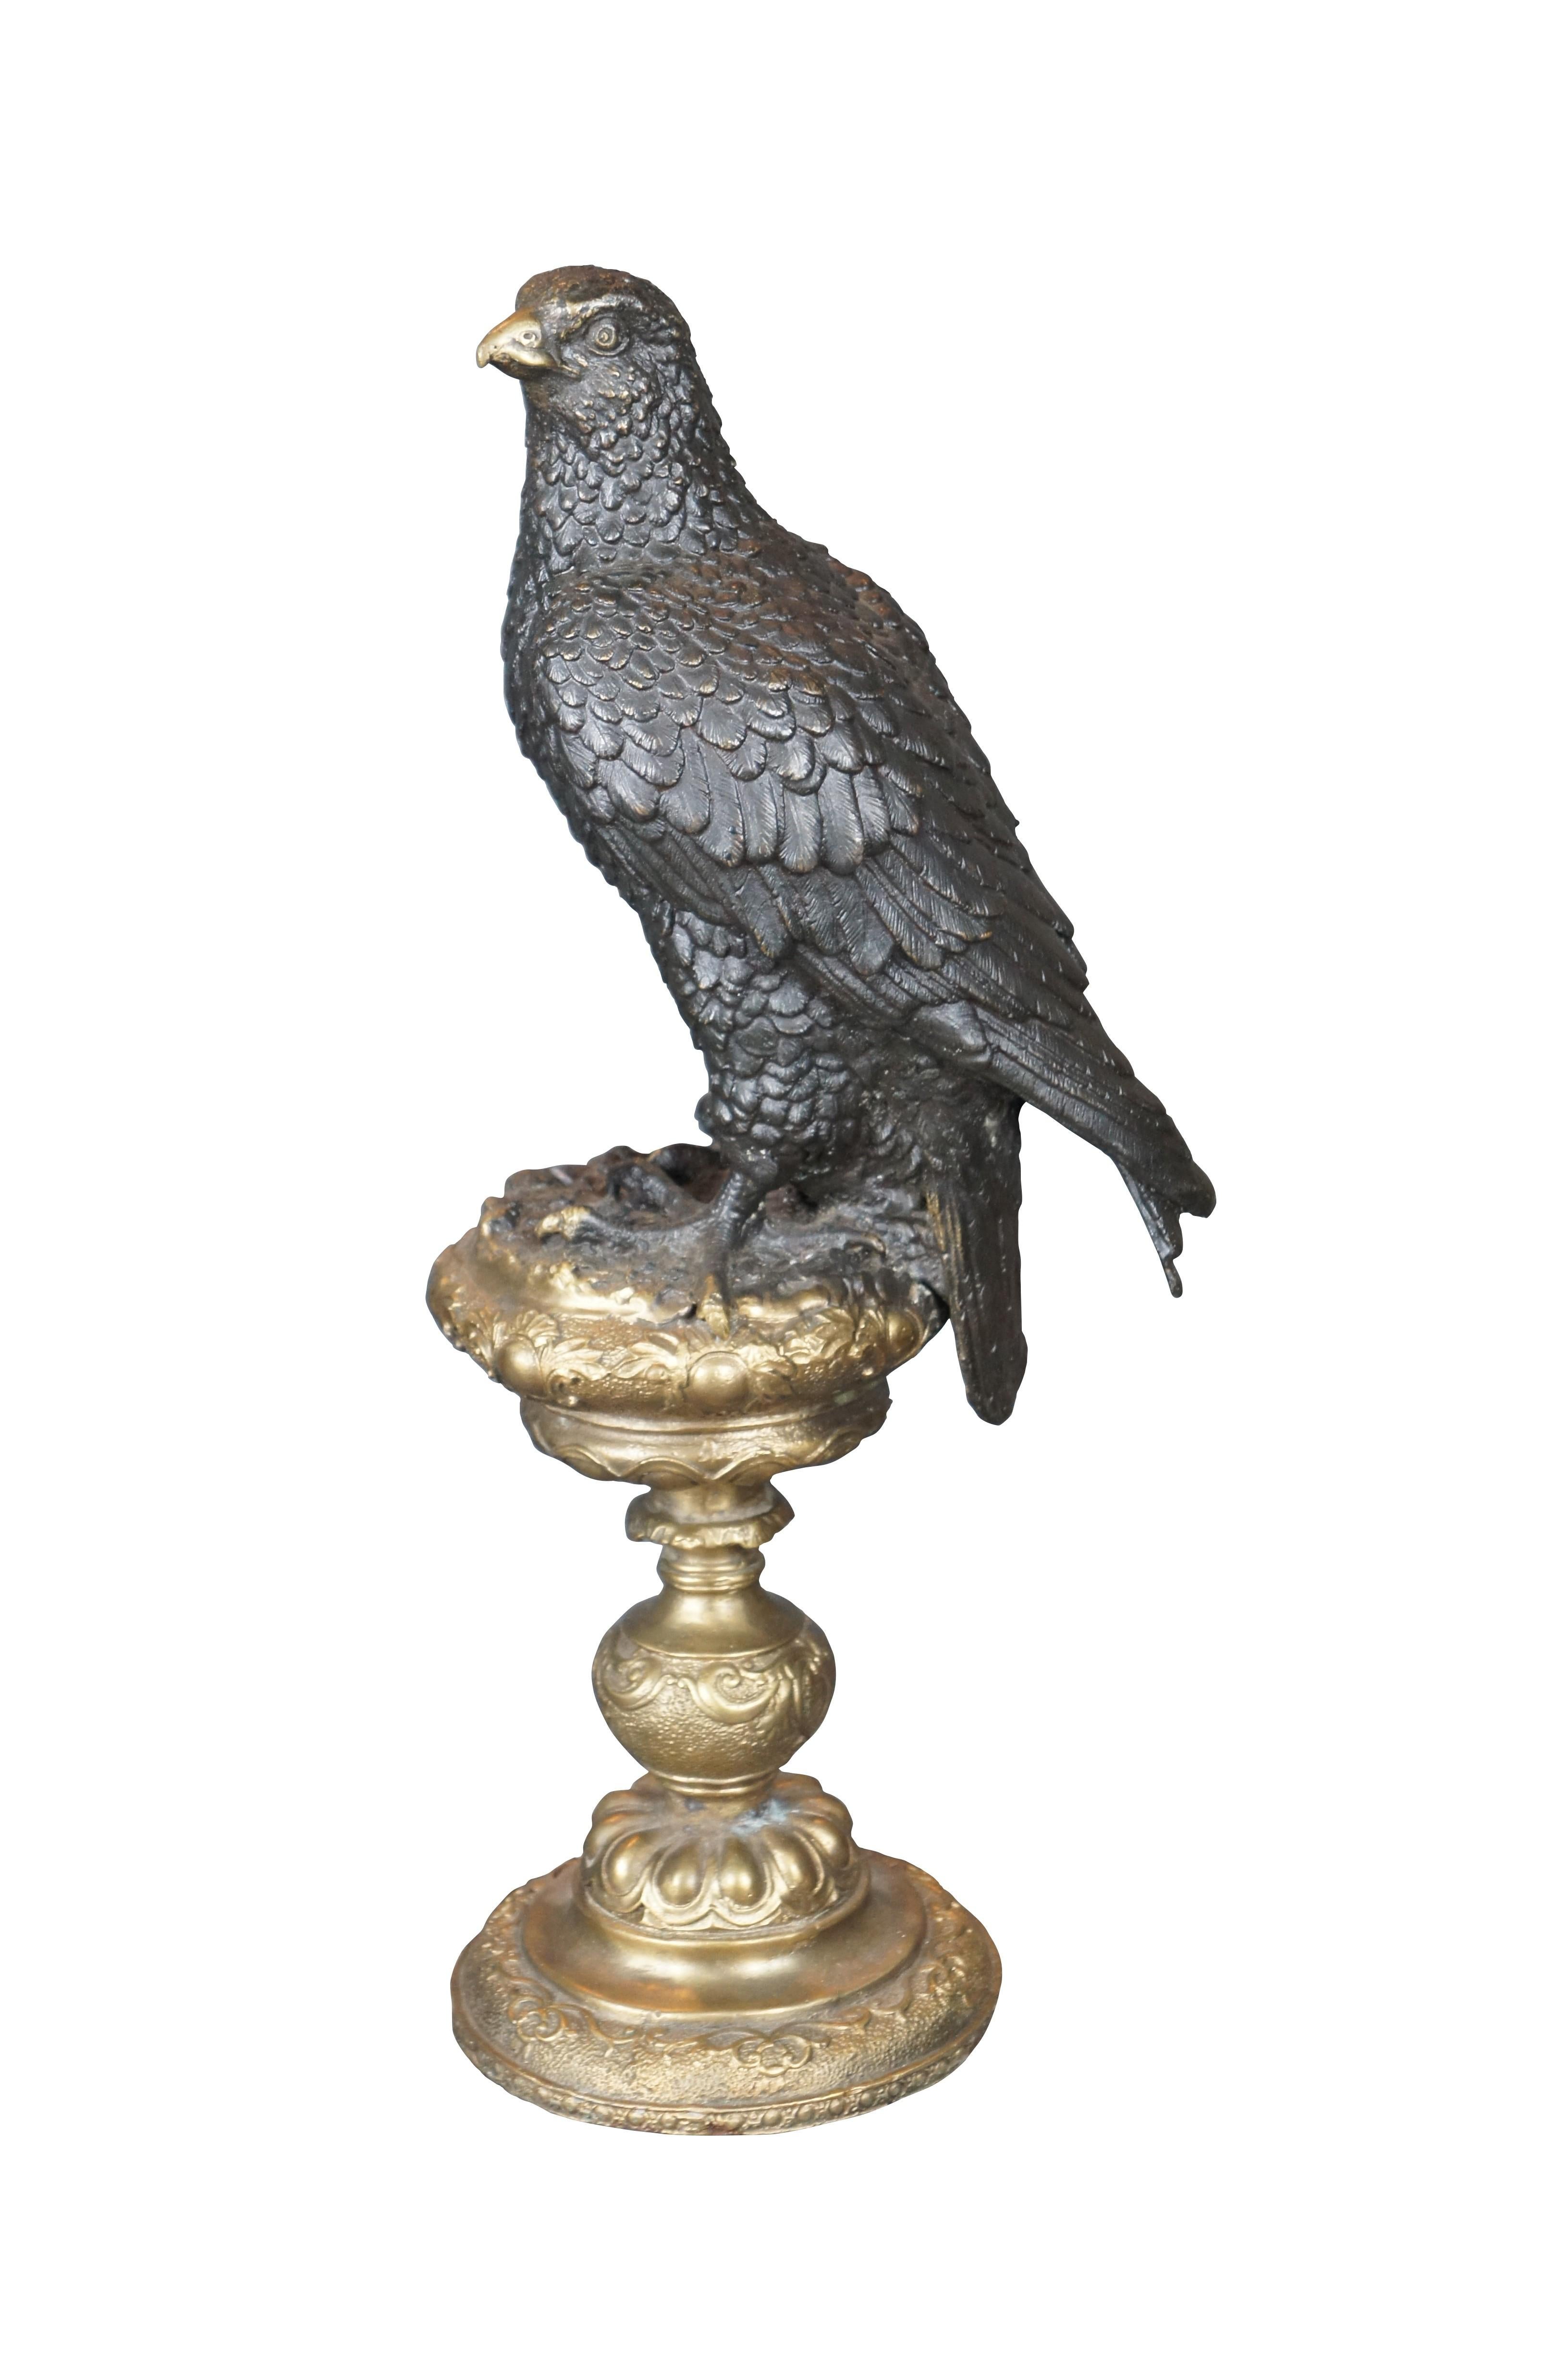 Un impressionnant aigle en bronze au-dessus d'un bâton d'autel d'après Archibald Thorburn (écossais 1860-1935). La figure de bronze représente un aigle royal perché. L'aigle est en noir avec un bec en or sur un piédestal / bâton d'autel orné d'une